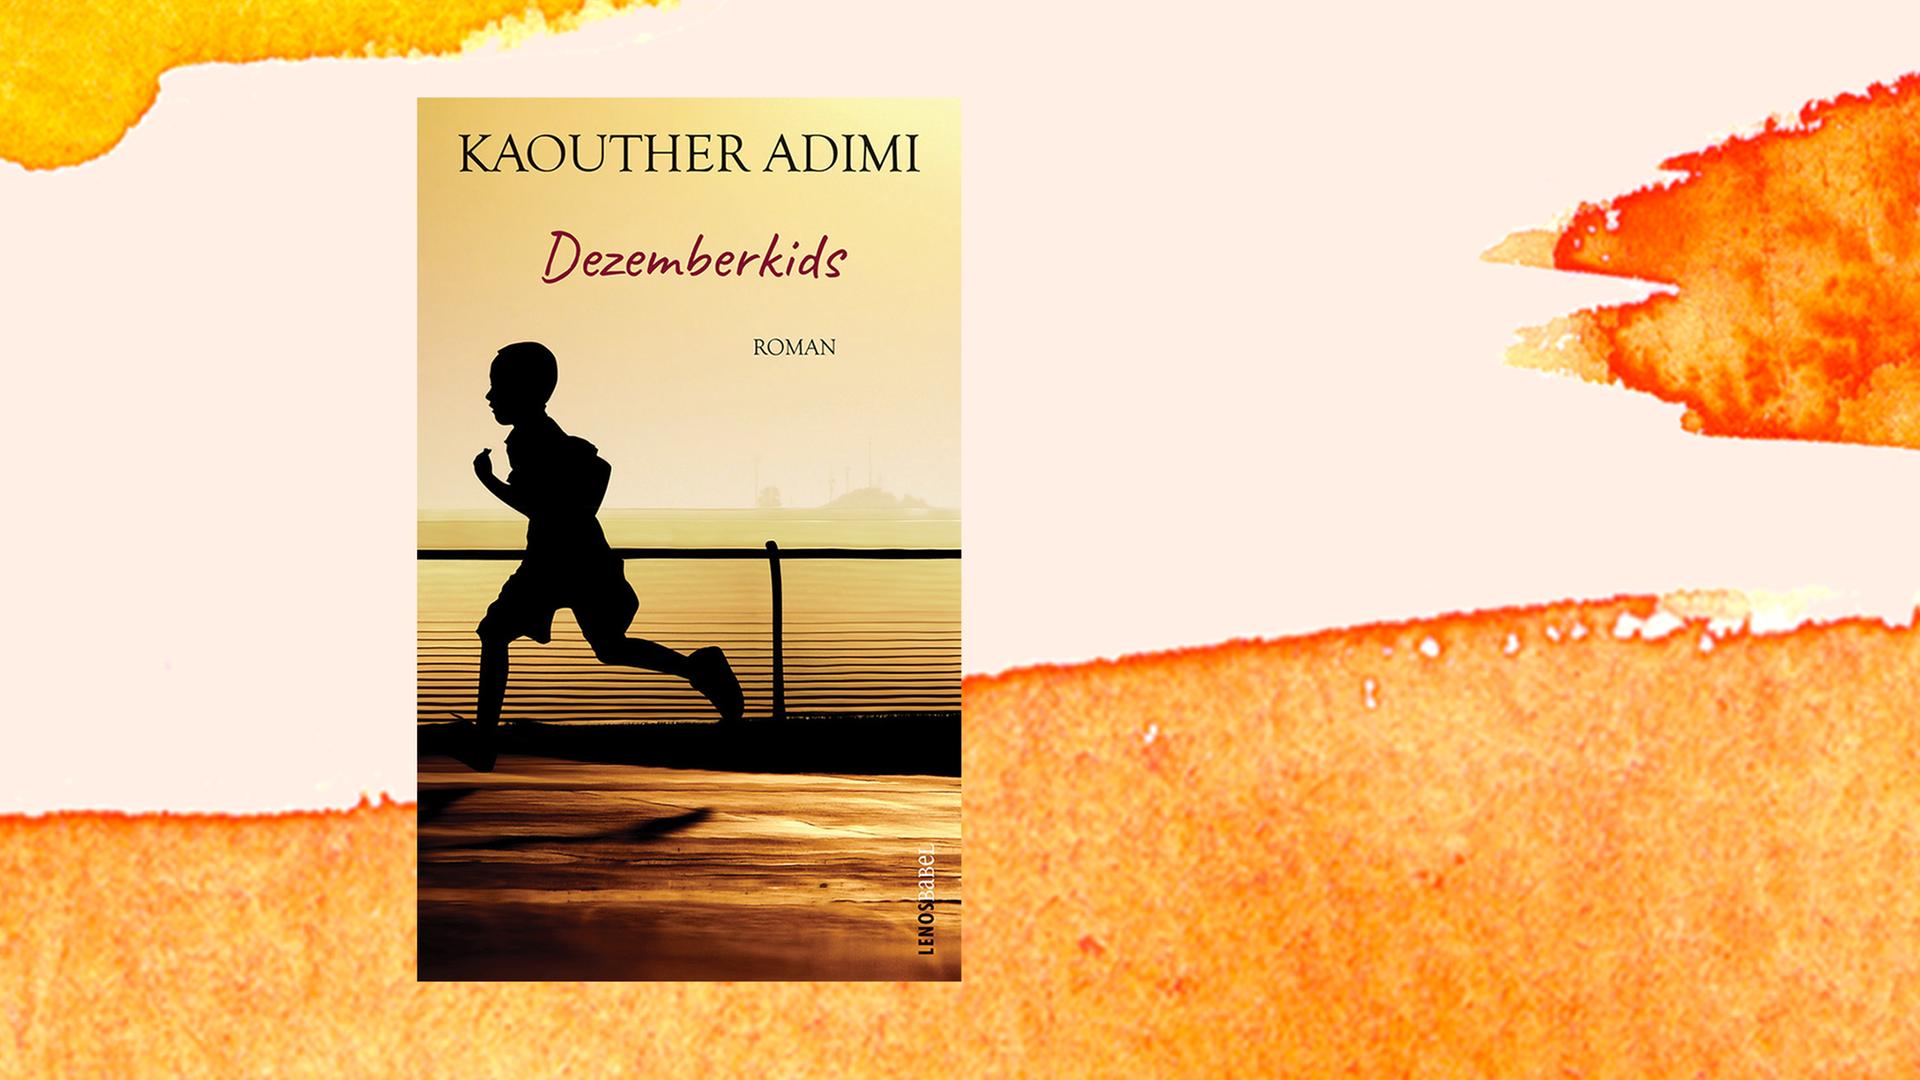 Buchcover von Kaouther Adimi: "Dezemberkids", Lenos Verlag, 2020.